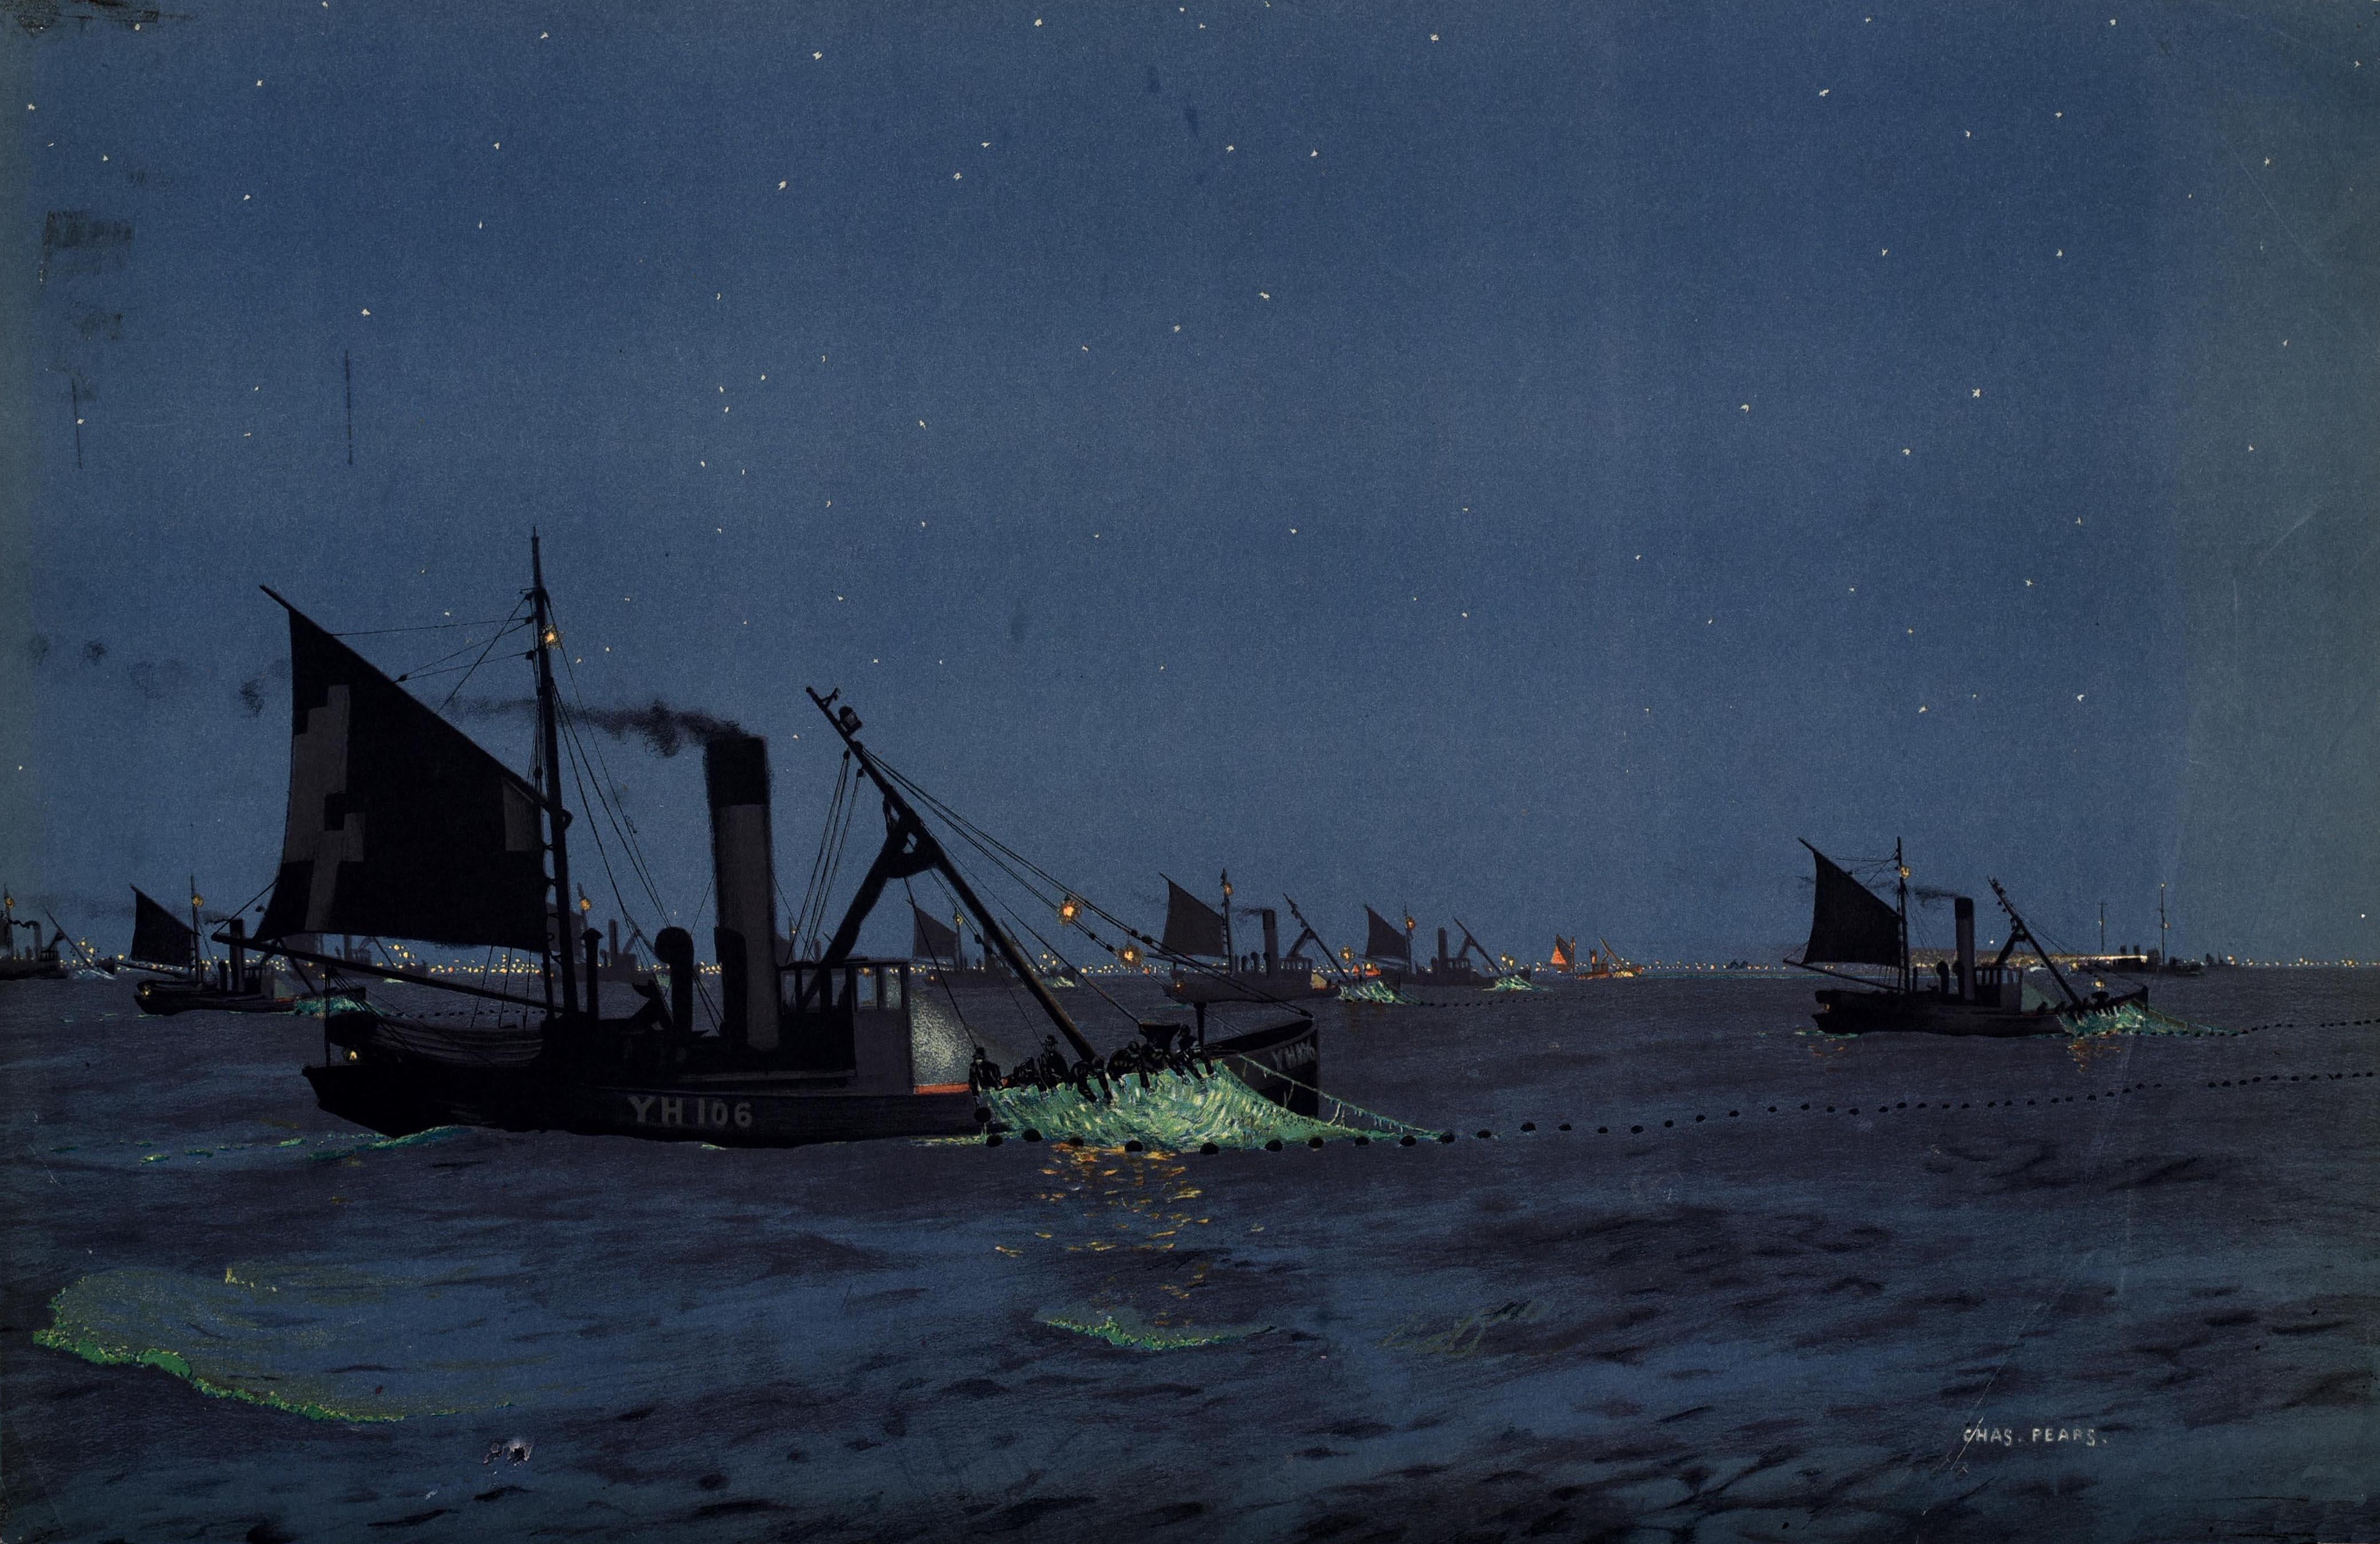 Affiche originale d'époque publiée par l'Empire Marketing Board (EMB 1926-1933) : Herring Drifters In The North Sea (Dériveurs de harengs en mer du Nord), avec une superbe illustration du peintre, illustrateur et affichiste britannique Charles Pears